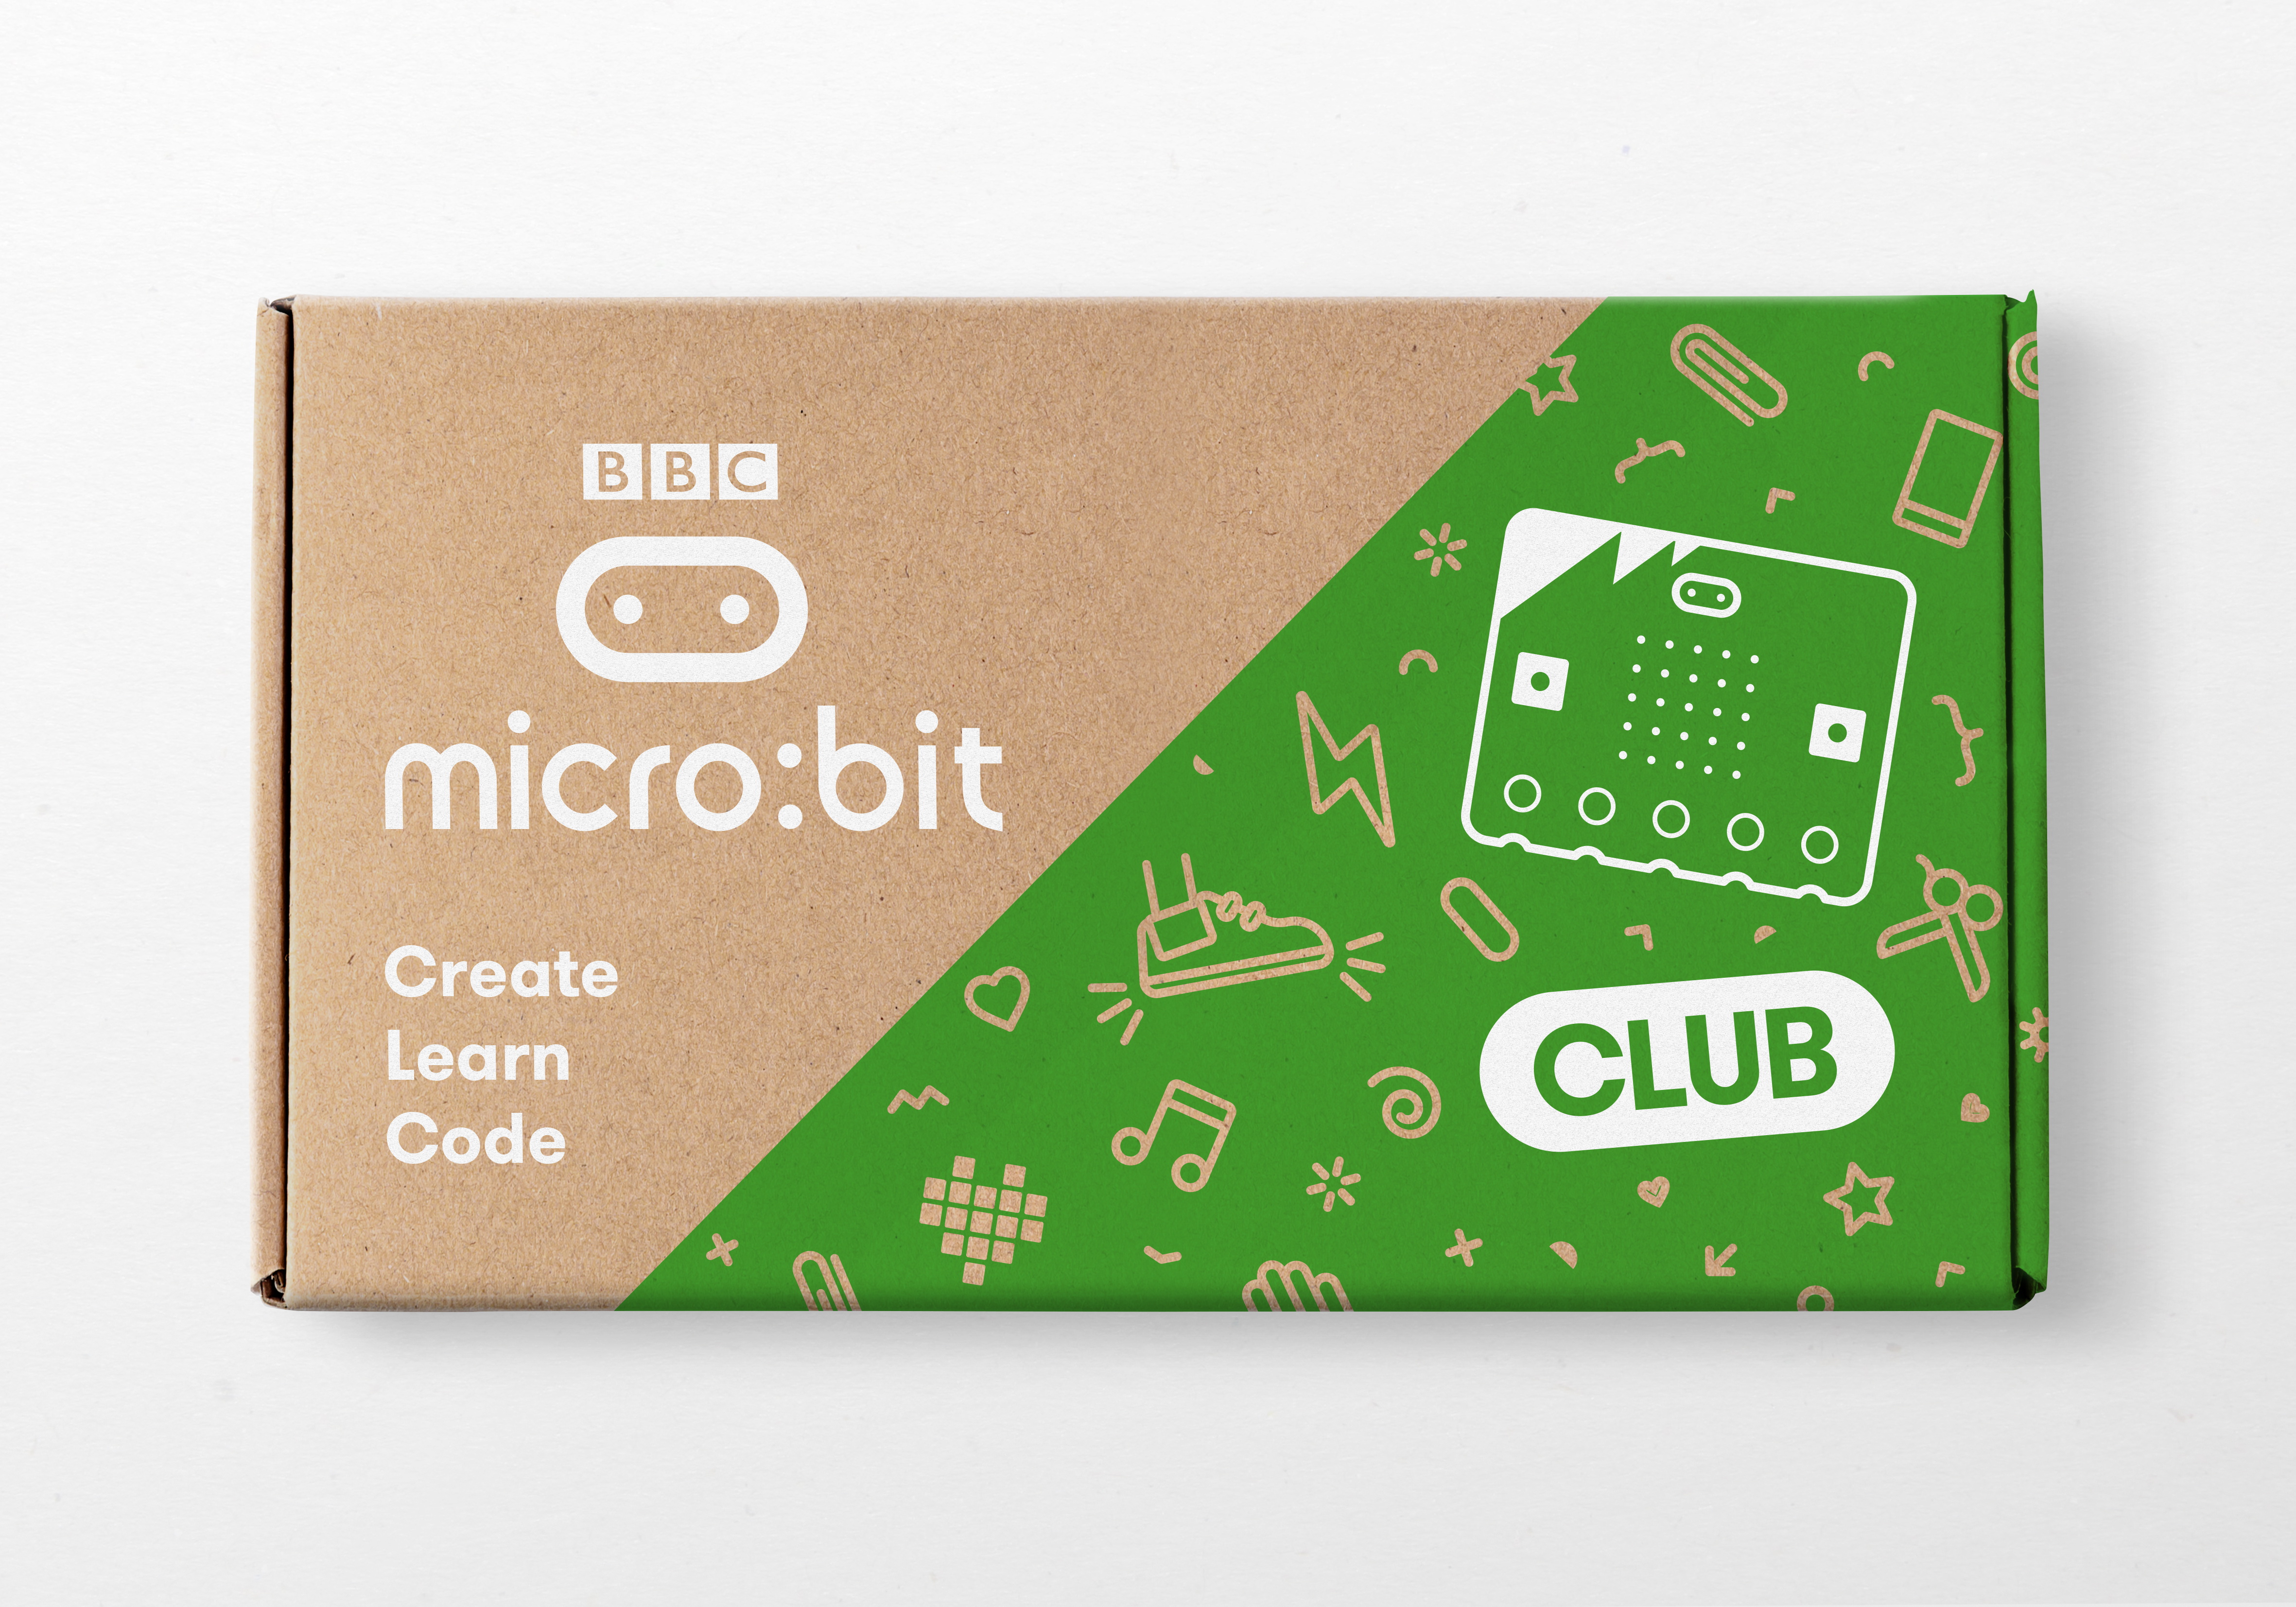 micro_bit club packaging